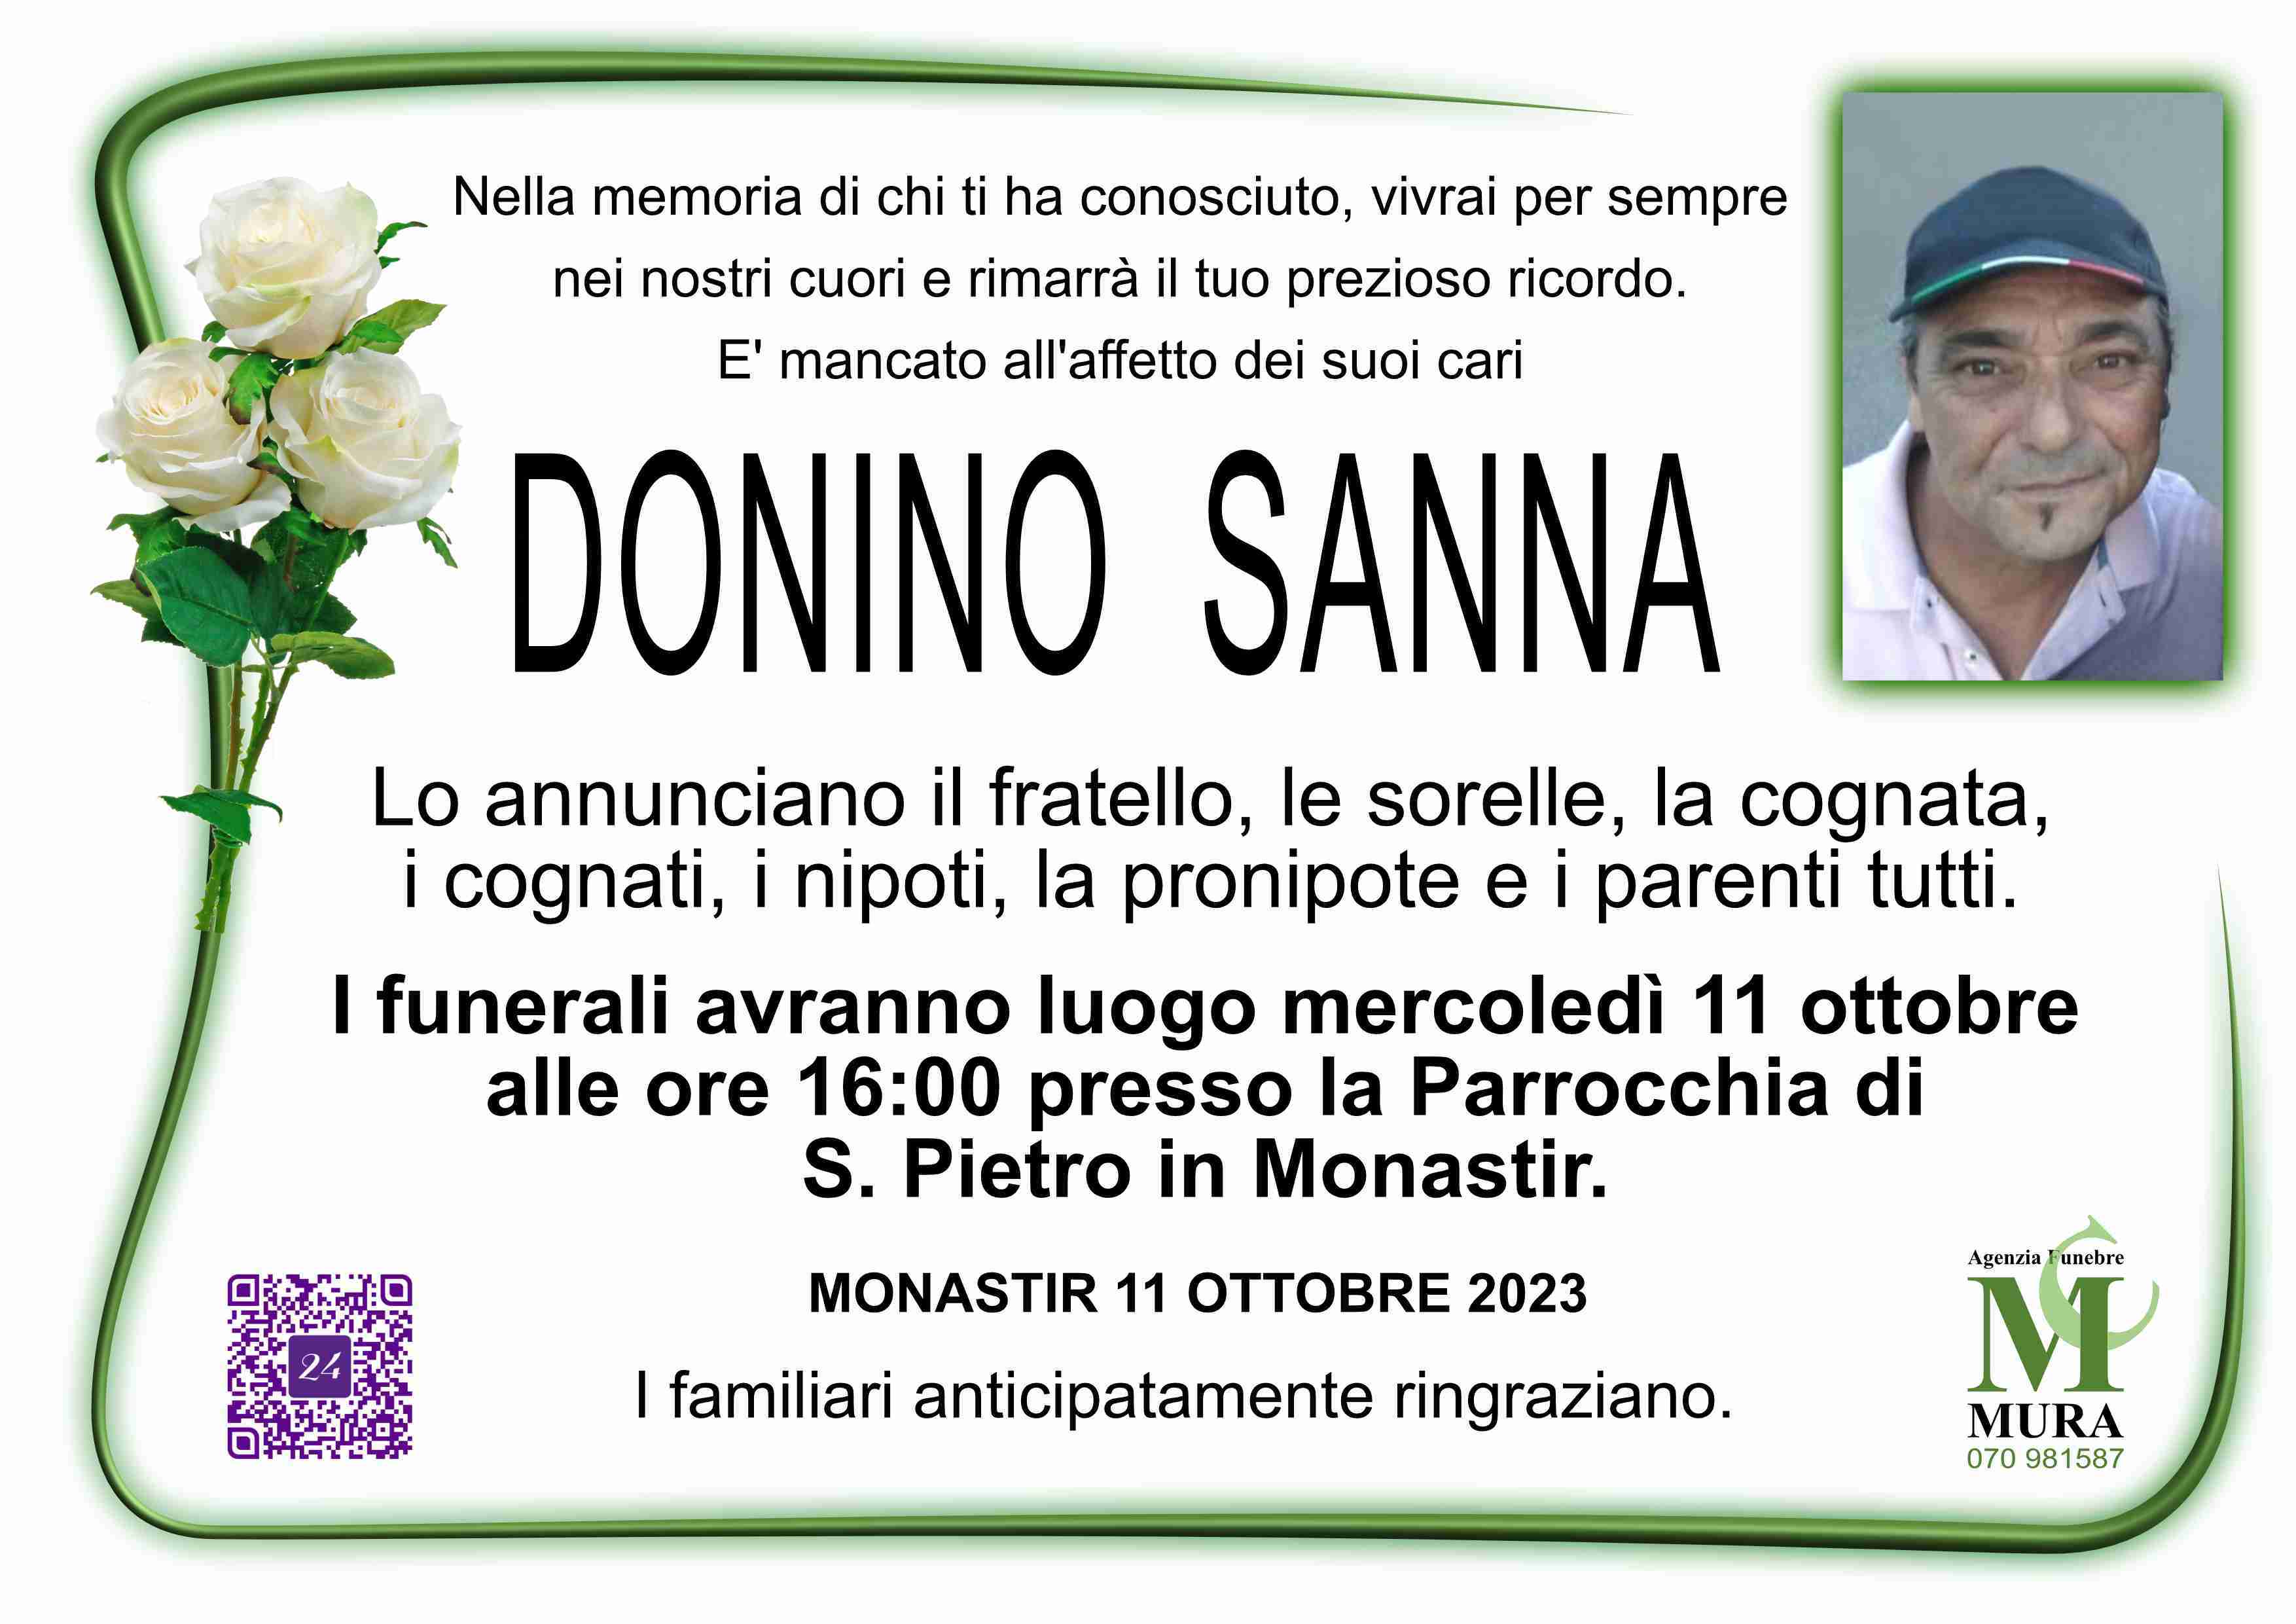 Donino Sanna